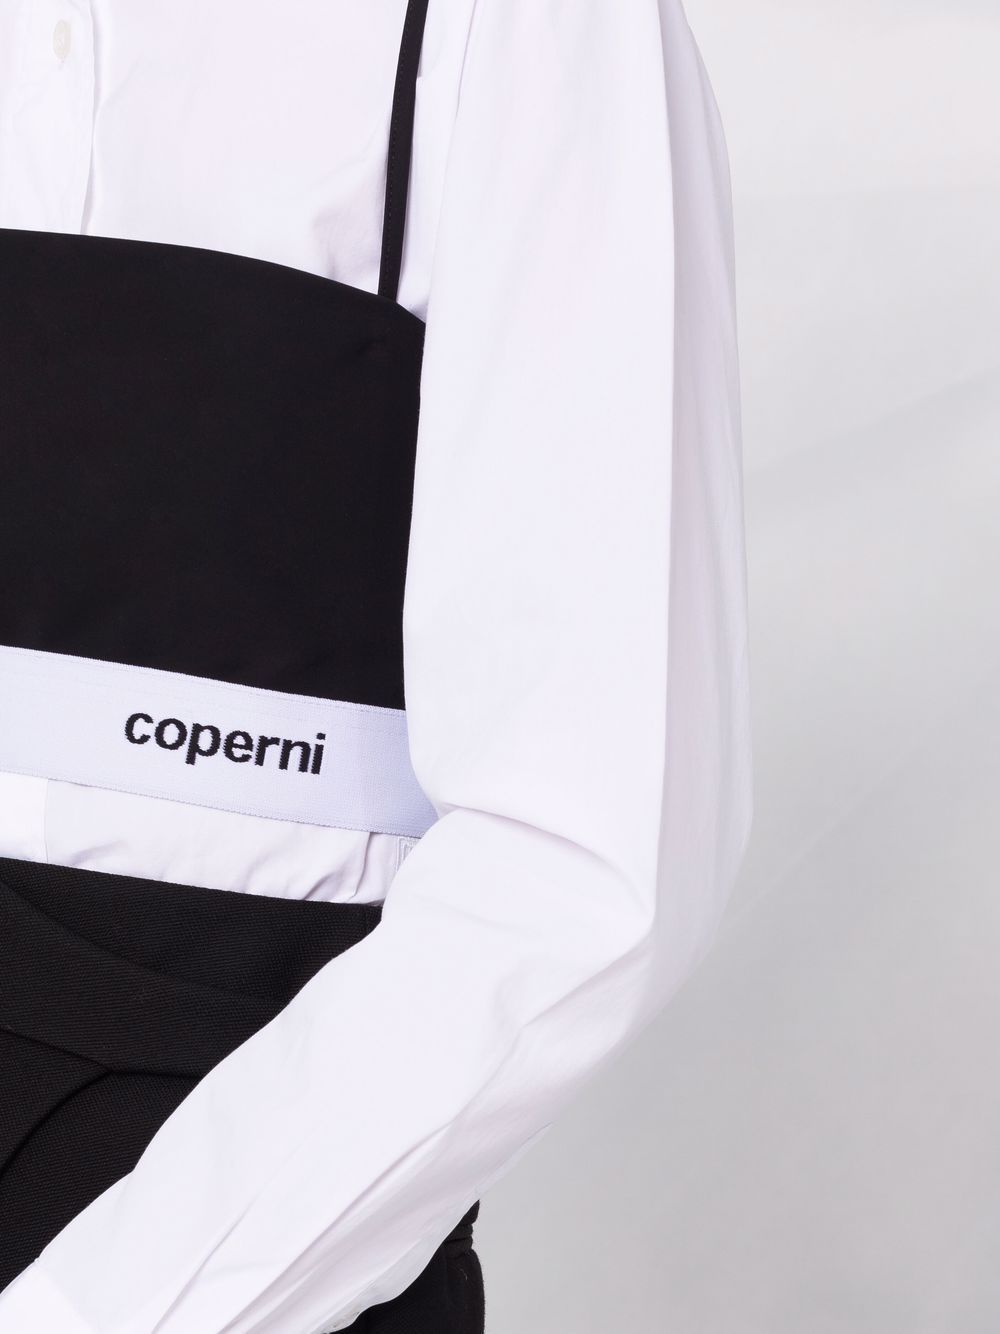 фото Coperni топ без рукавов с логотипом